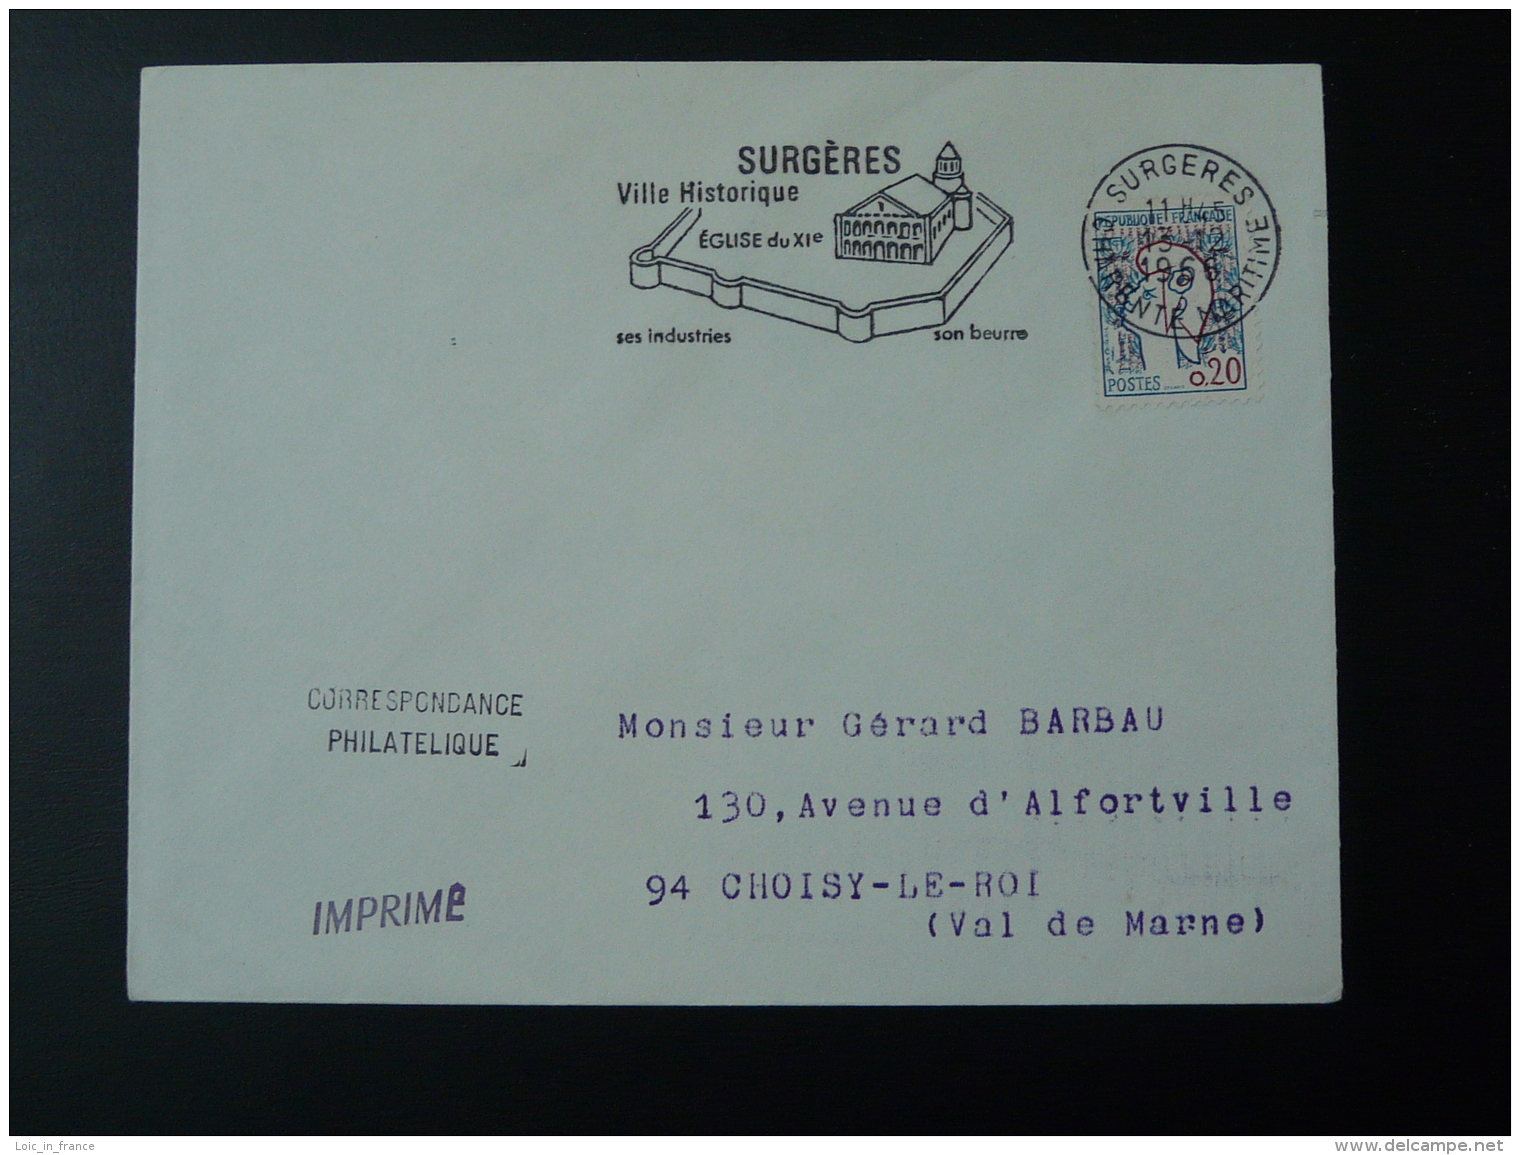 17 Charente Maritime Surgères église Remparts Beurre 1966 - Flamme Sur Lettre Postmark On Cover - Mechanical Postmarks (Advertisement)